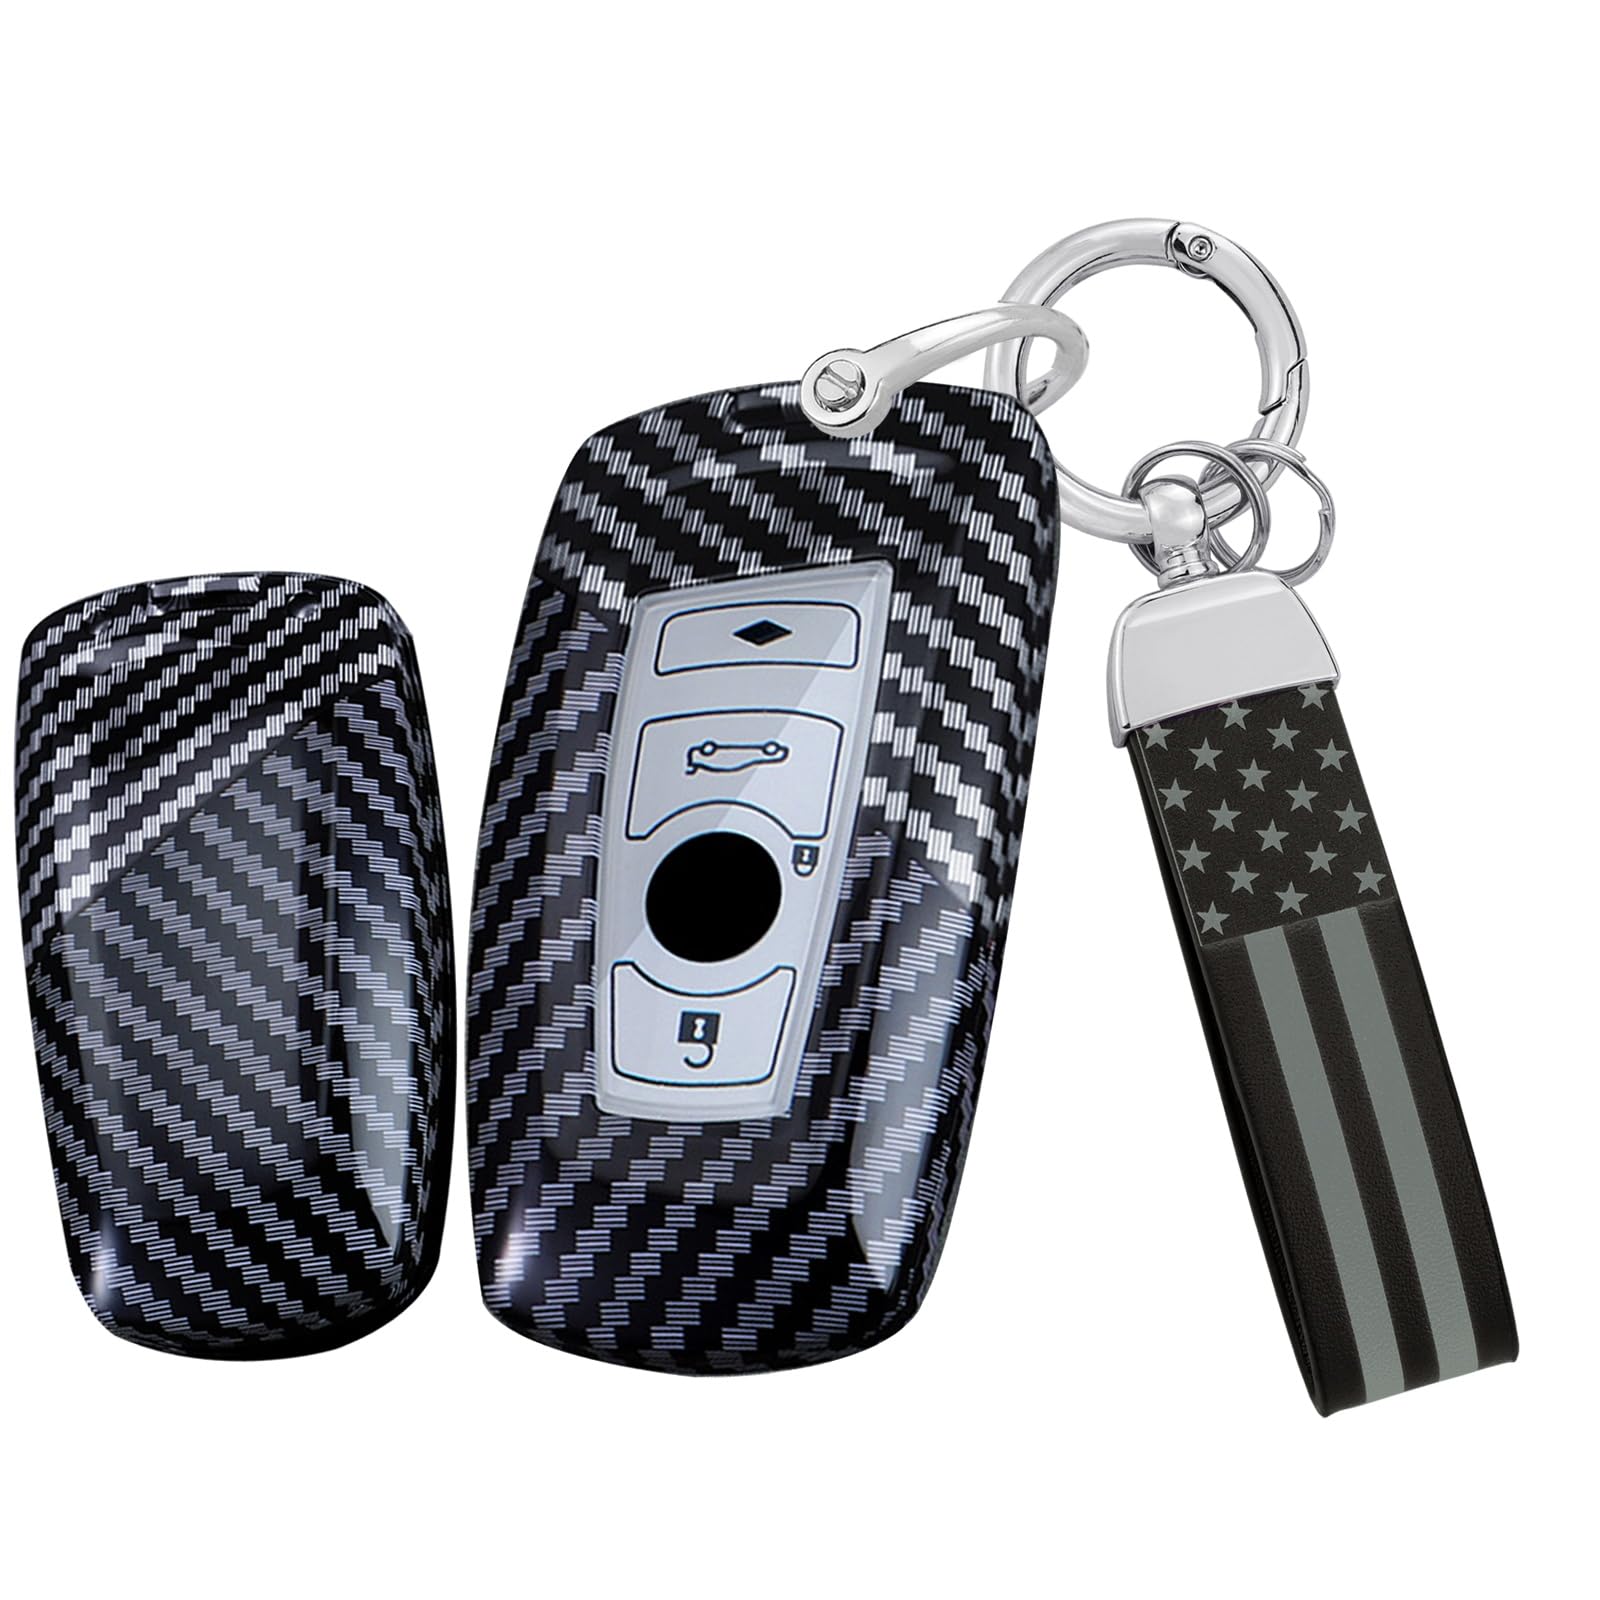 Ysbxitu 4 Tasten Schlüssel Hülle für BMW Schlüsselanhänger Schlüsselcase Passt für BMW F20 F21 F30 F31 F34 F35 F80 F32 F33 F82 F83 F07 F10 F11 F18 F12 F13 F01 F02 Fernbedienung Cover Geschenkidee Weiß von Ysbxitu